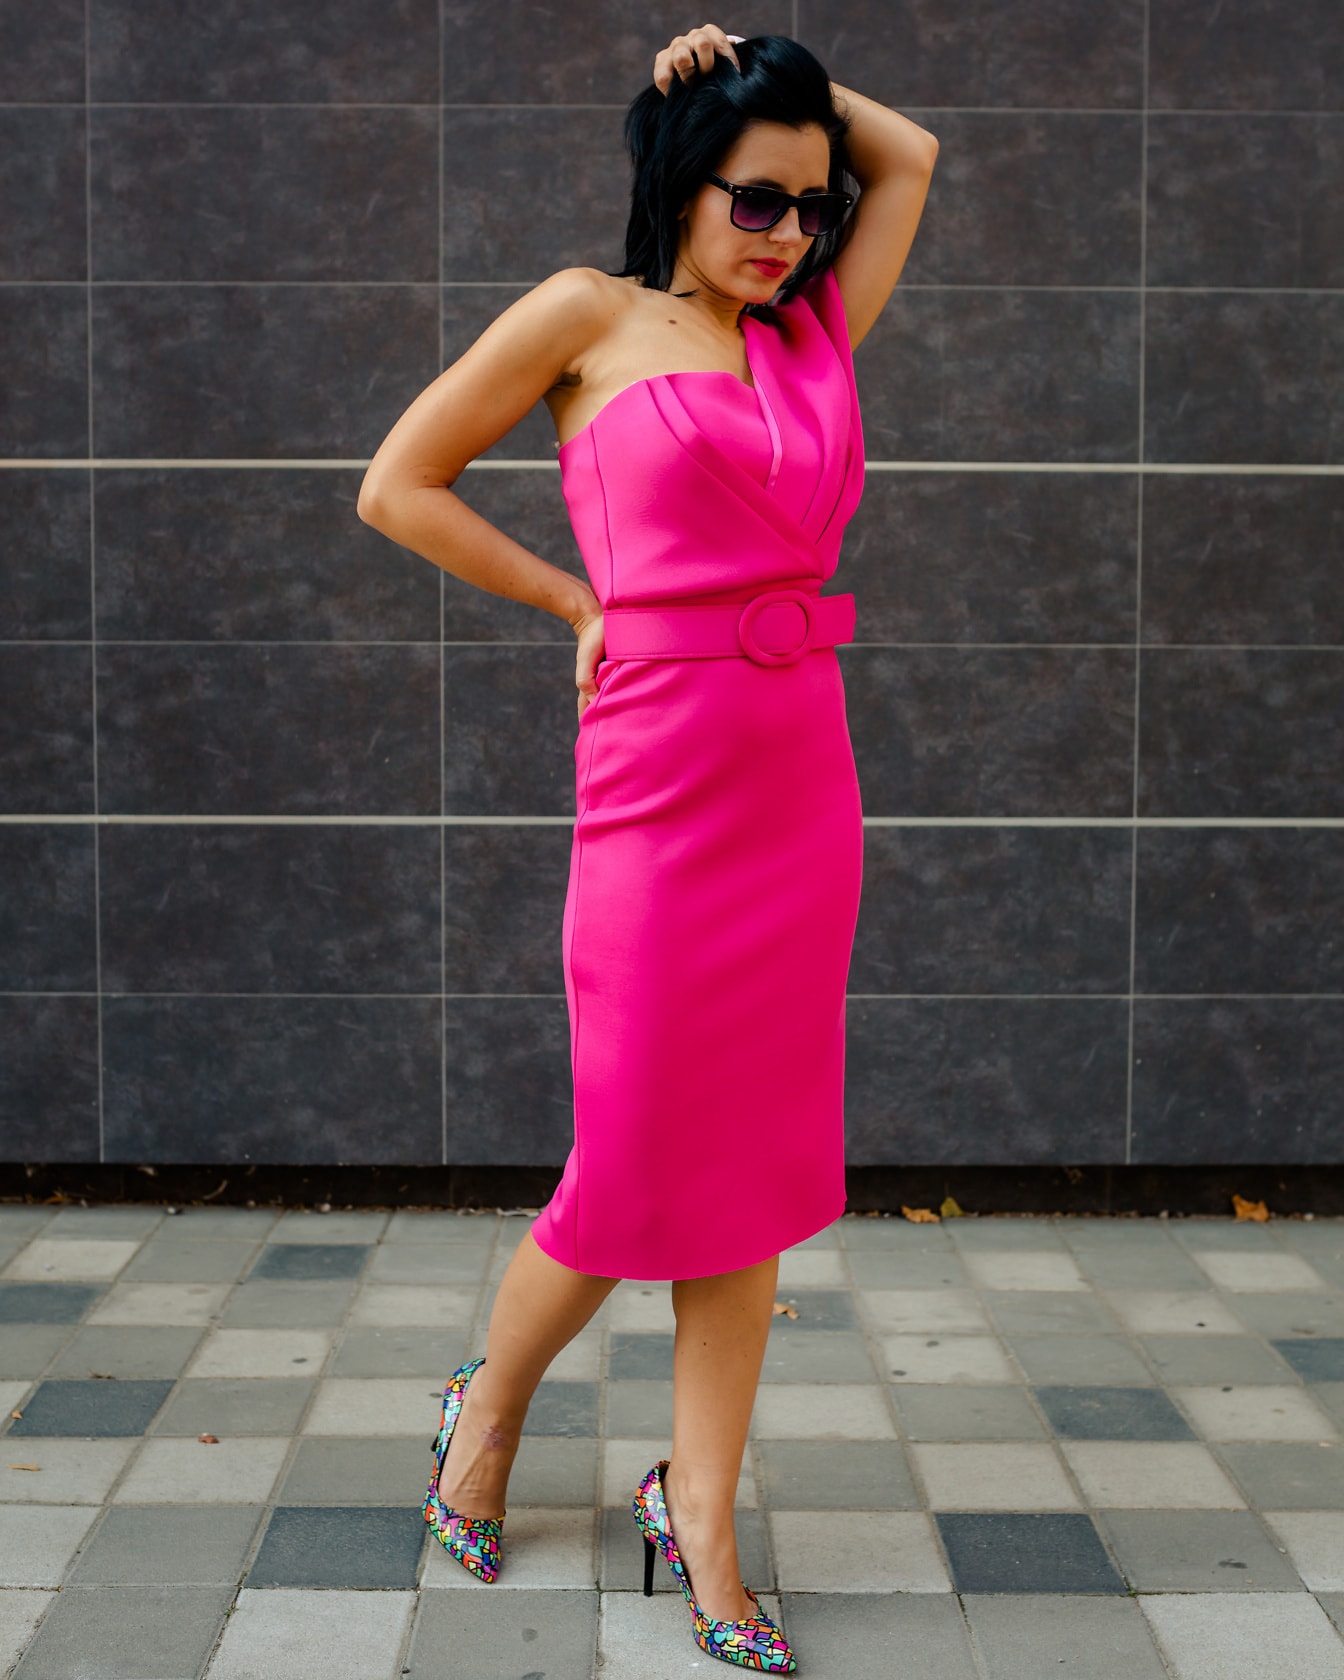 Prekrasna mlada žena foto model pozira u živopisnoj ružičastoj haljini